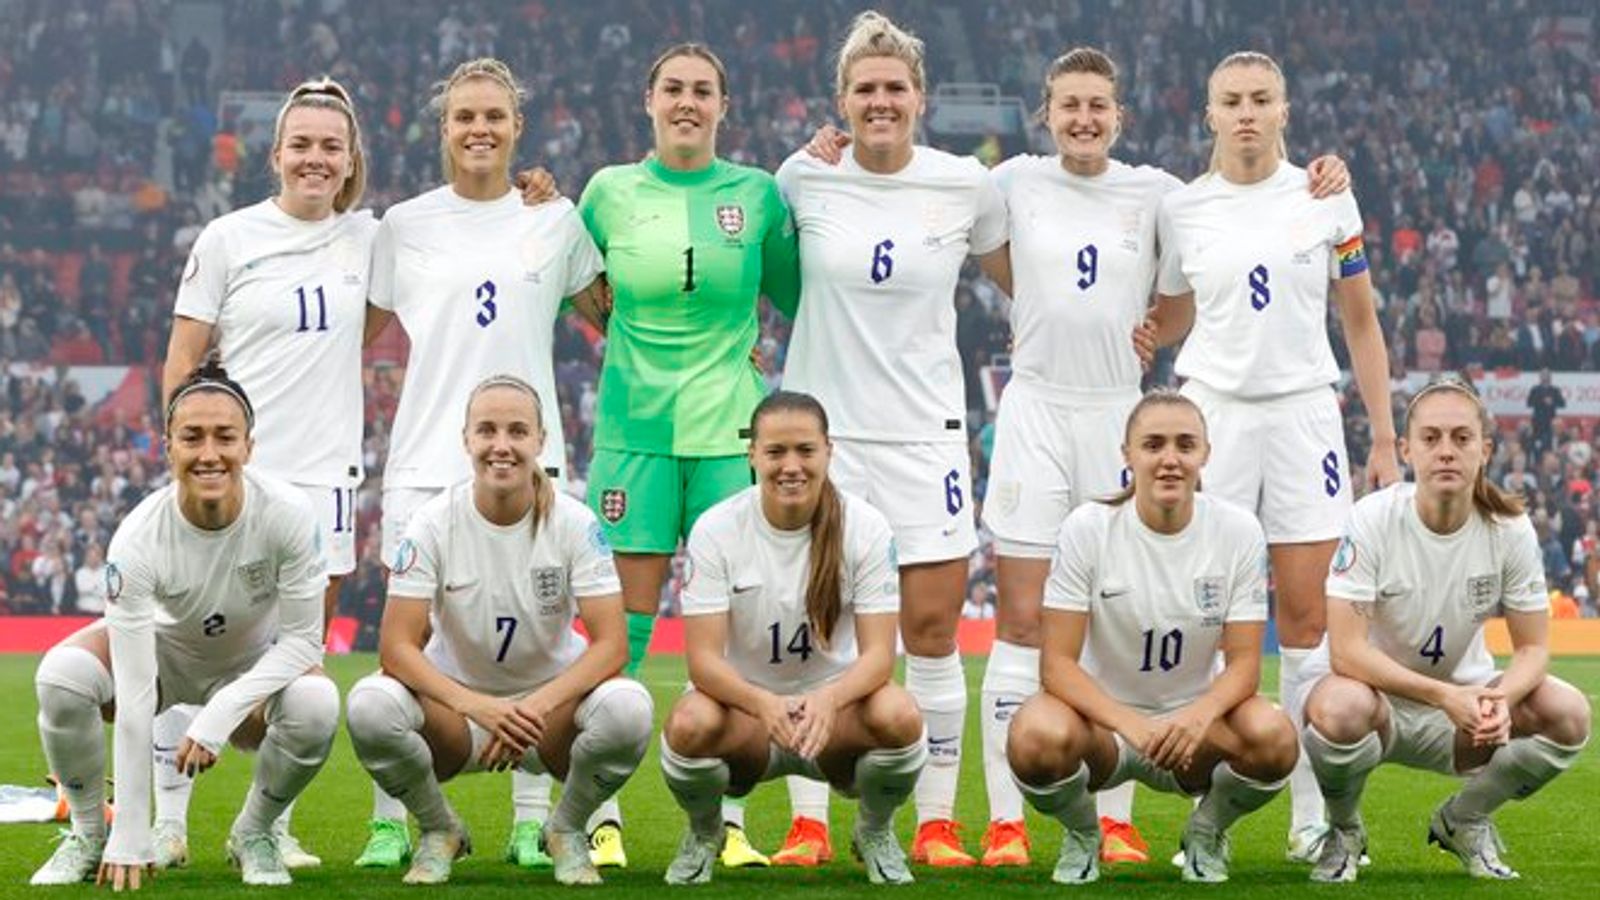 Women's Euros 2022 Allwhite England lineup reignites debate on lack